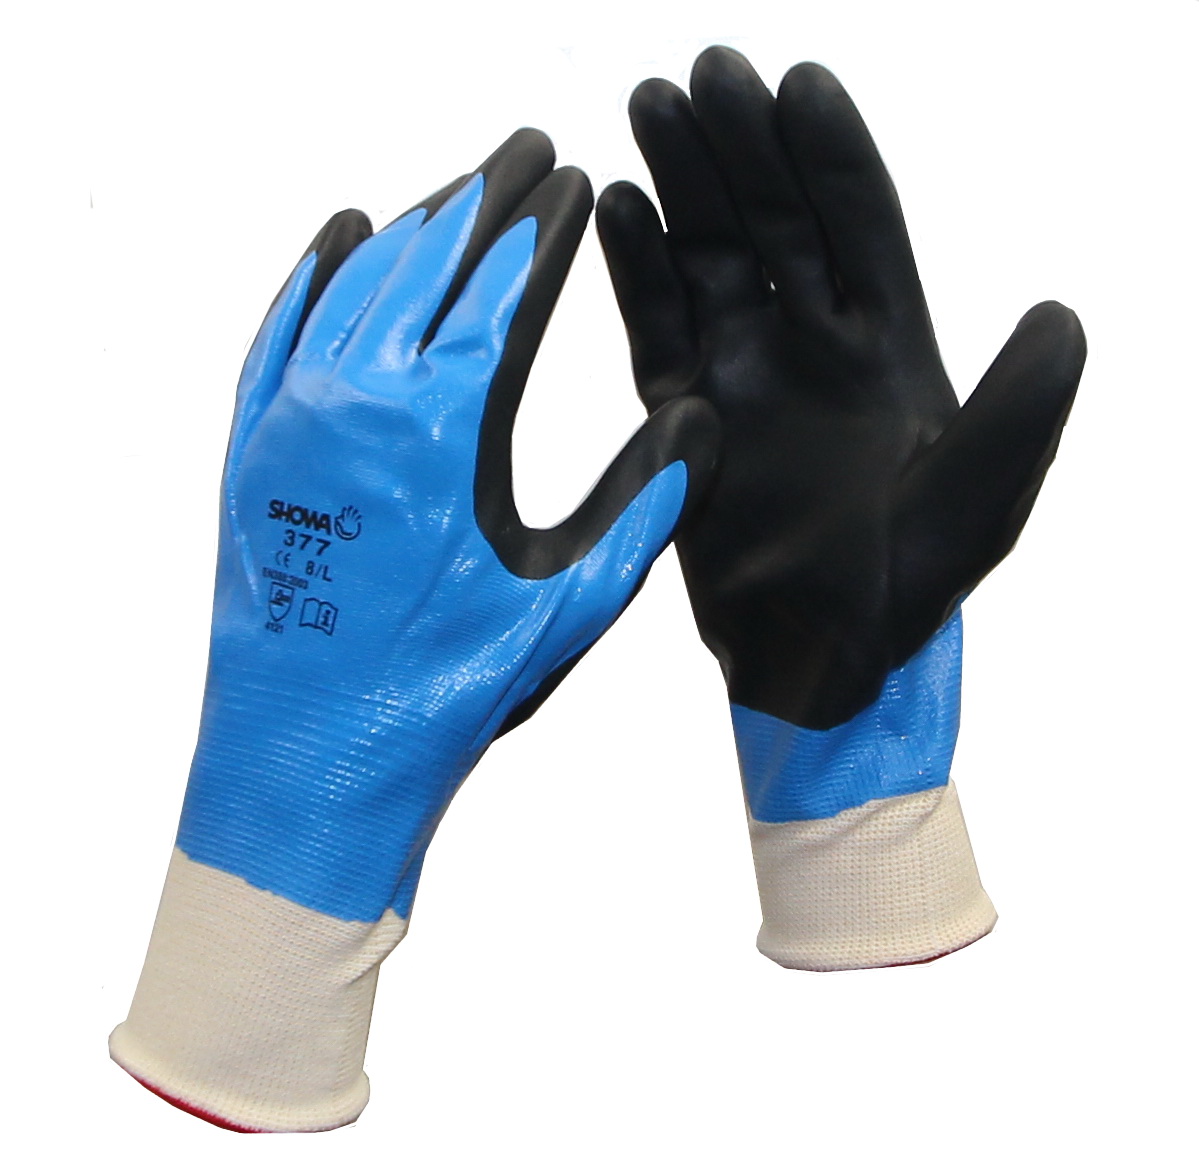 GÖRTE U. TIEDEMANN GMBH CO. KG - ALTENHO Handschuhe Nitrile Foam Grip 377 Gr. 10 vollständig getaucht in Tüte